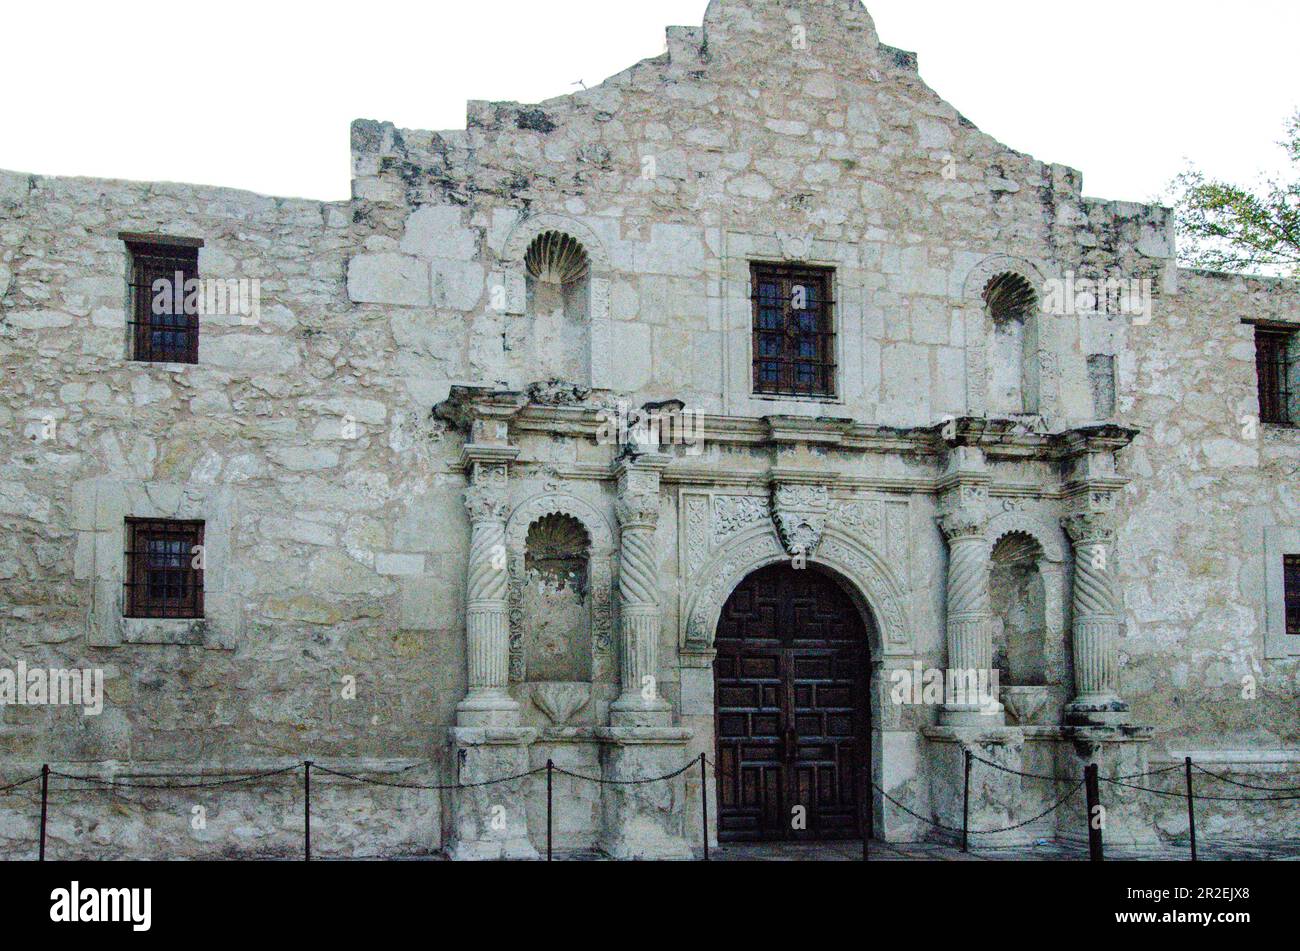 Die Schlacht von Alamo war ein entscheidender Faktor in der texanischen Revolution Stockfoto